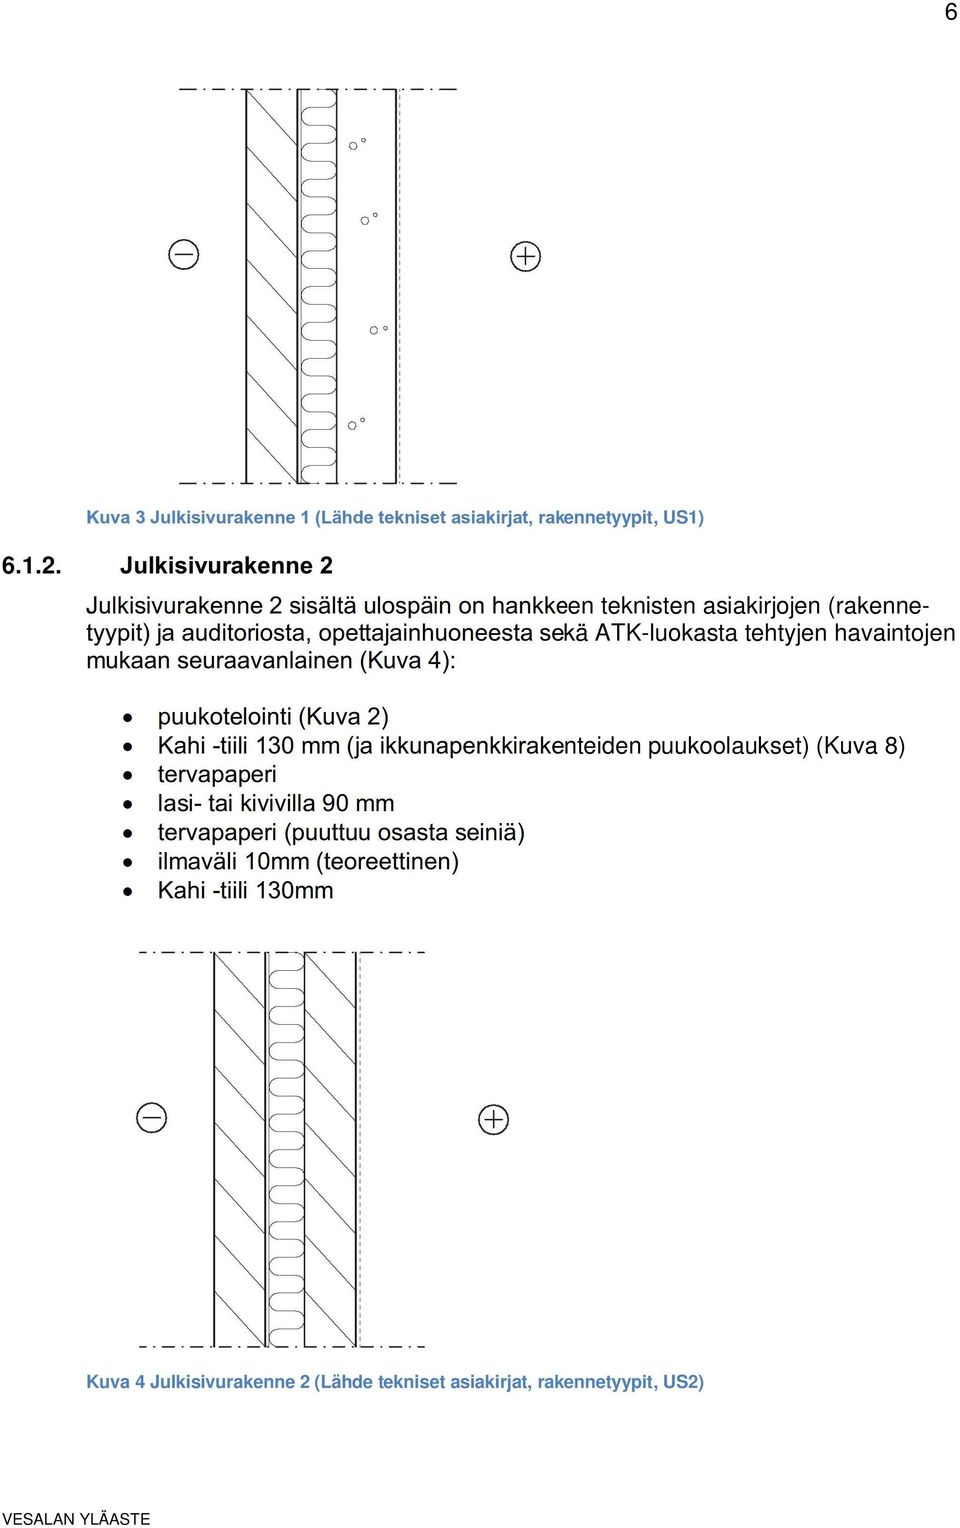 sekä ATK-luokasta tehtyjen havaintojen mukaan seuraavanlainen (Kuva 4): puukotelointi (Kuva 2) Kahi -tiili 130 mm (ja ikkunapenkkirakenteiden